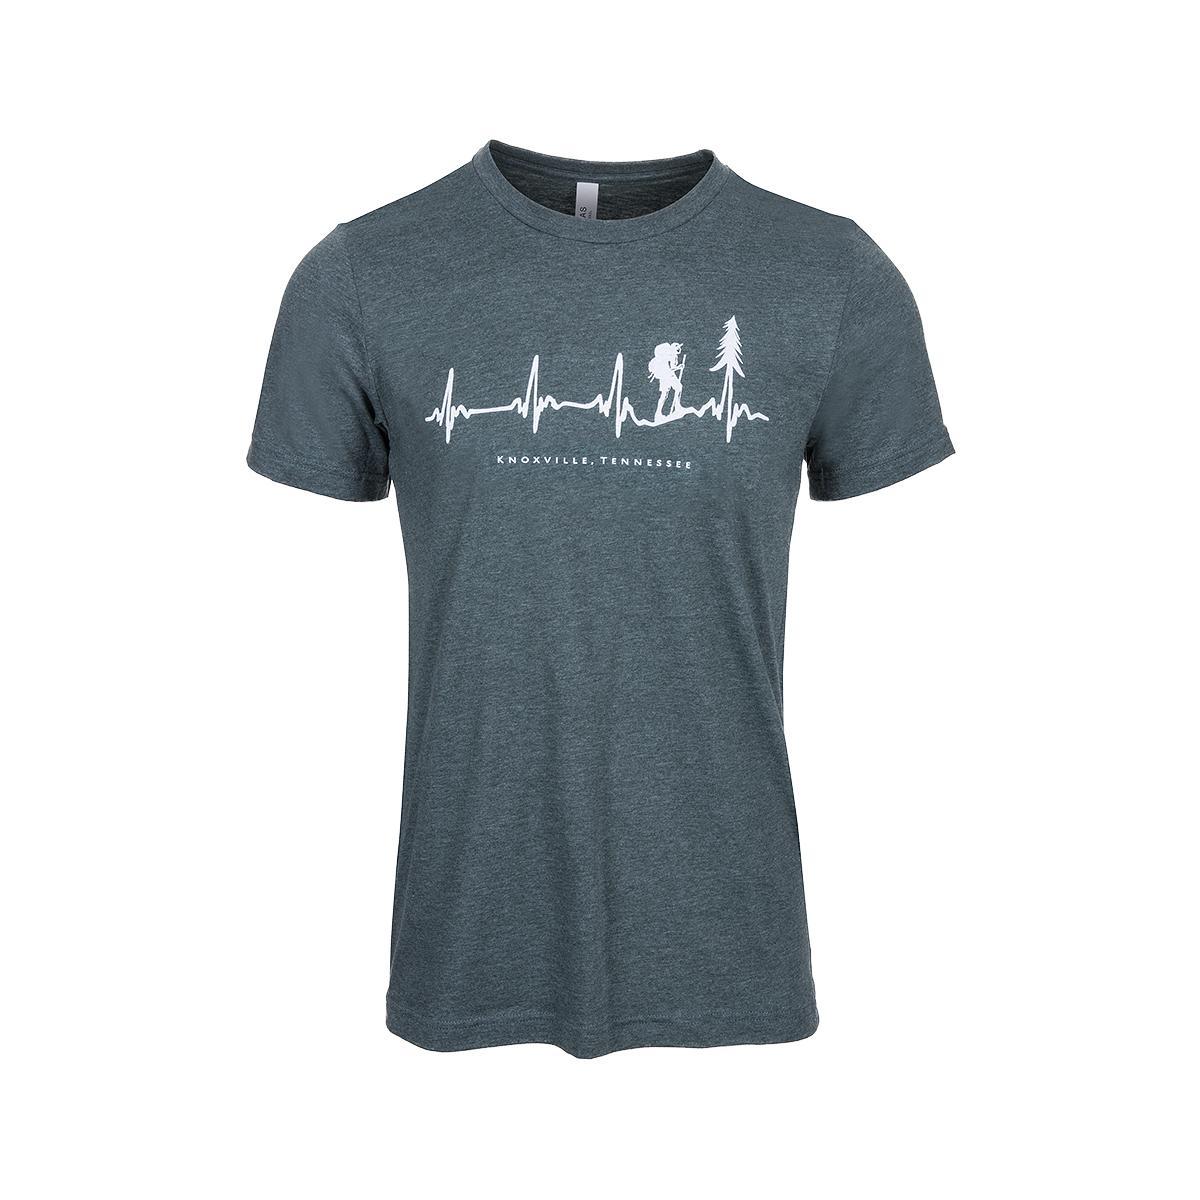  Knoxville Hiker Heartbeat Short Sleeve T- Shirt